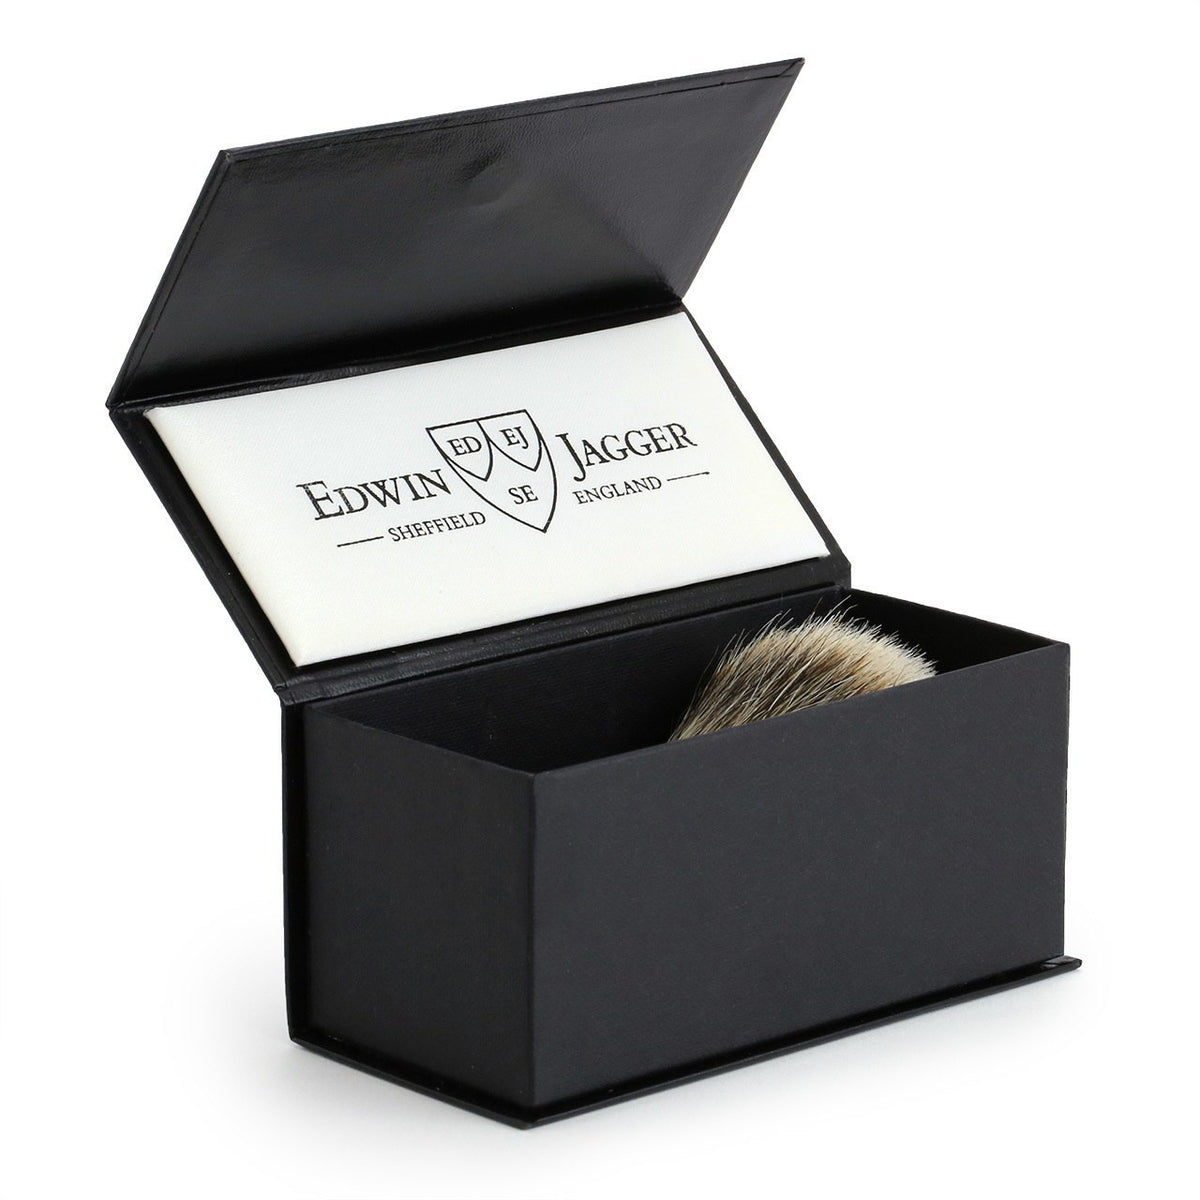 Edwin Jagger Chatsworth Super Badger Shaving Brush - Ivory